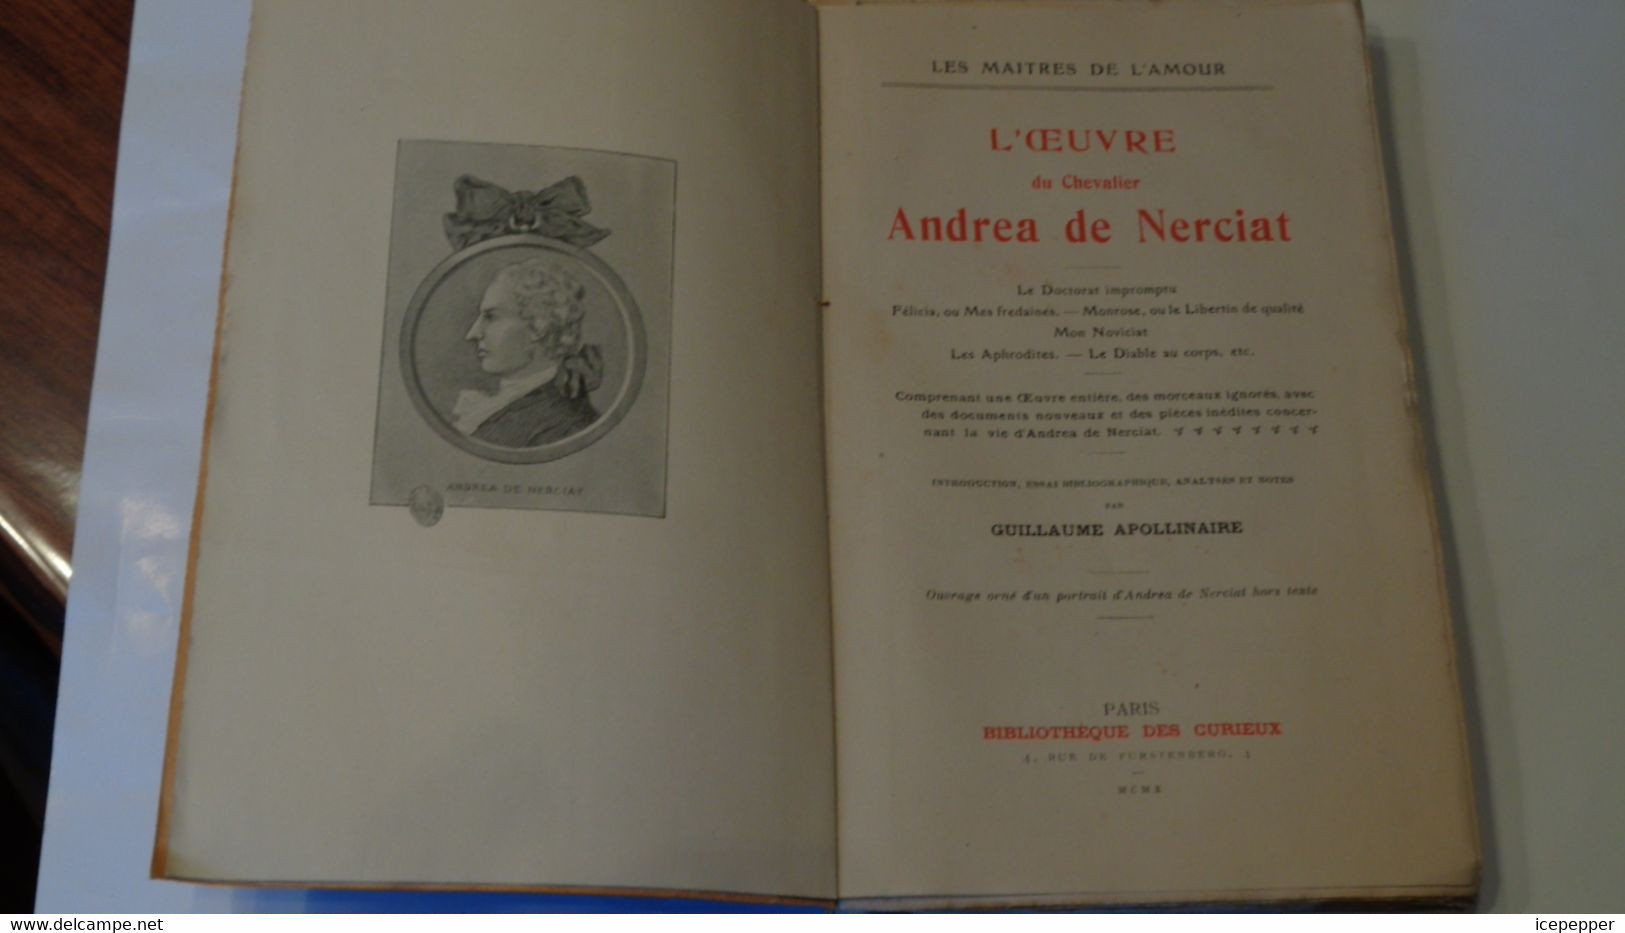 Les Maitres De L'amour "L'oeuvre Du Chevalier Andréa De Nerciat "collect.des Curieux 1910 - 1901-1940